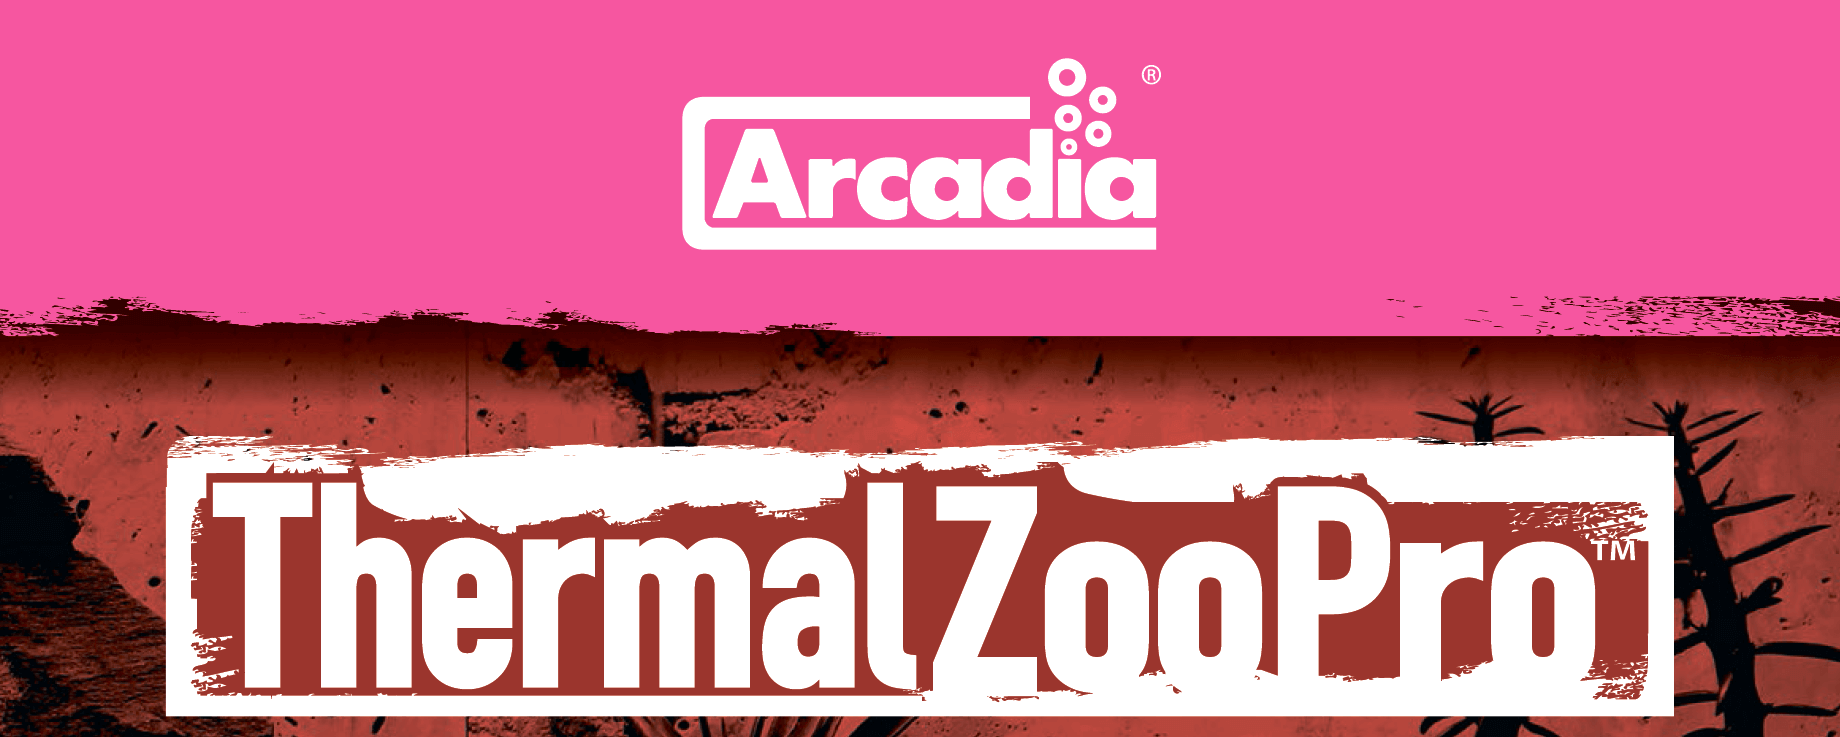 Светильник Arcadia ThermalZooPro цена